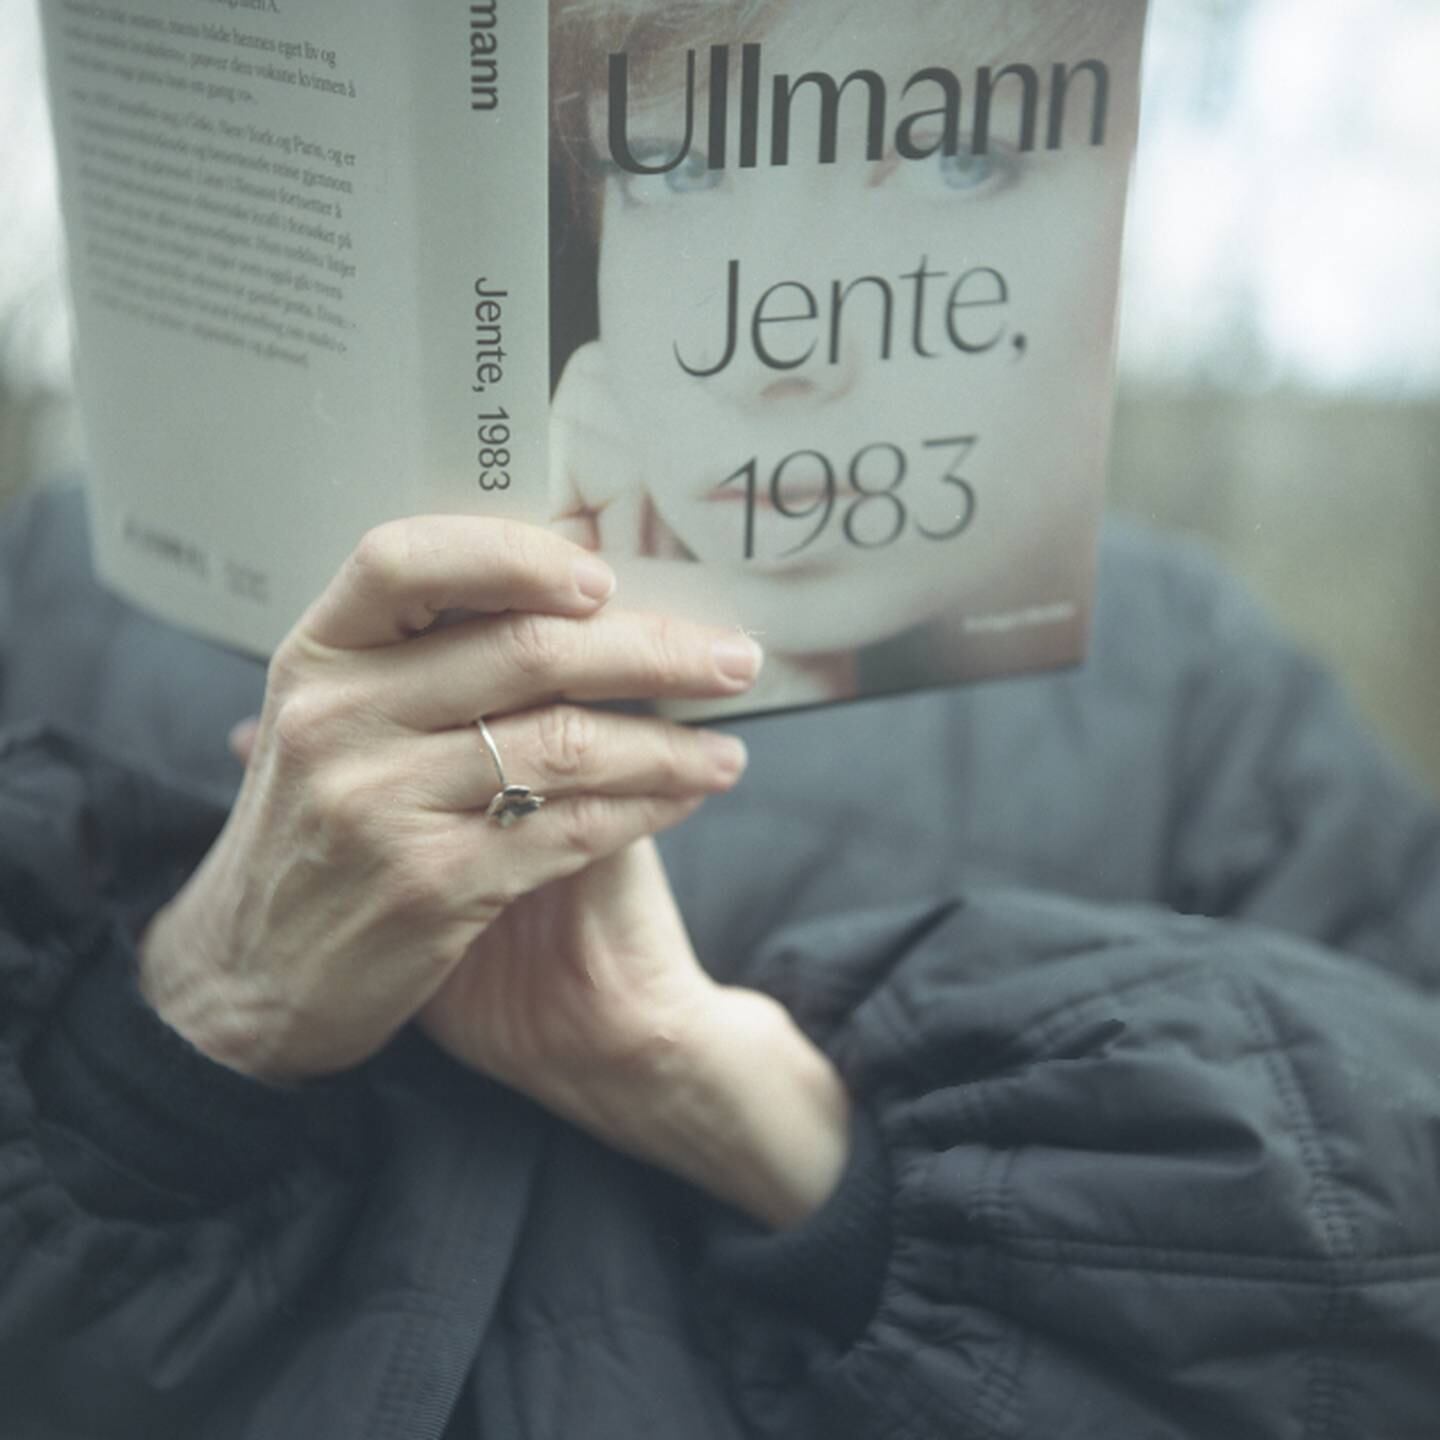 Portrettintervju av Linn Ullmann som er aktuelt med boka Jente. 1983. Bildene tatt ved Torshov.